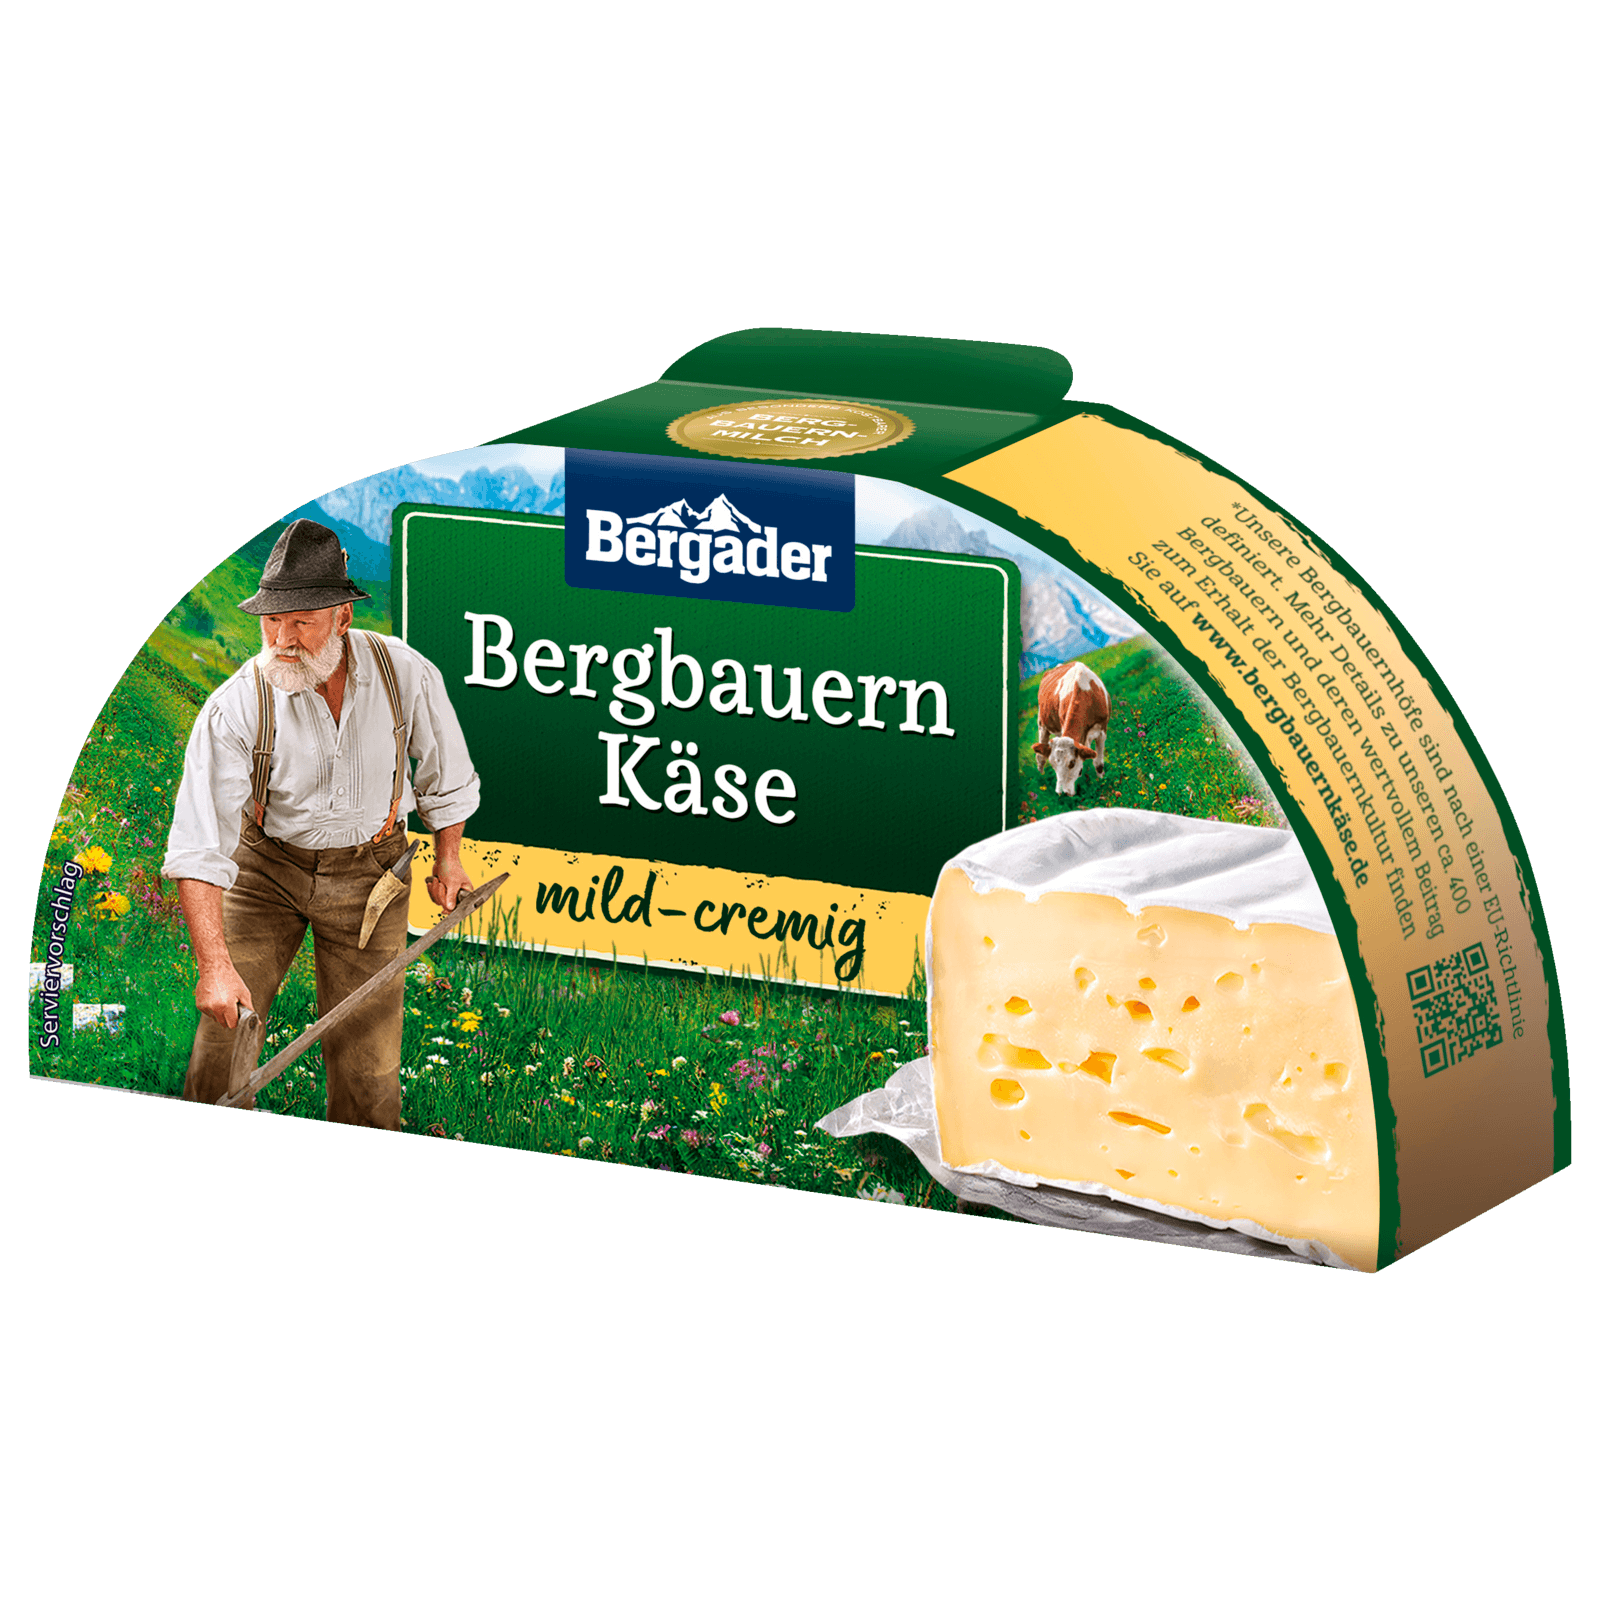 Bergader Bergbauern Käse cremig mild 165g bei REWE online bestellen!